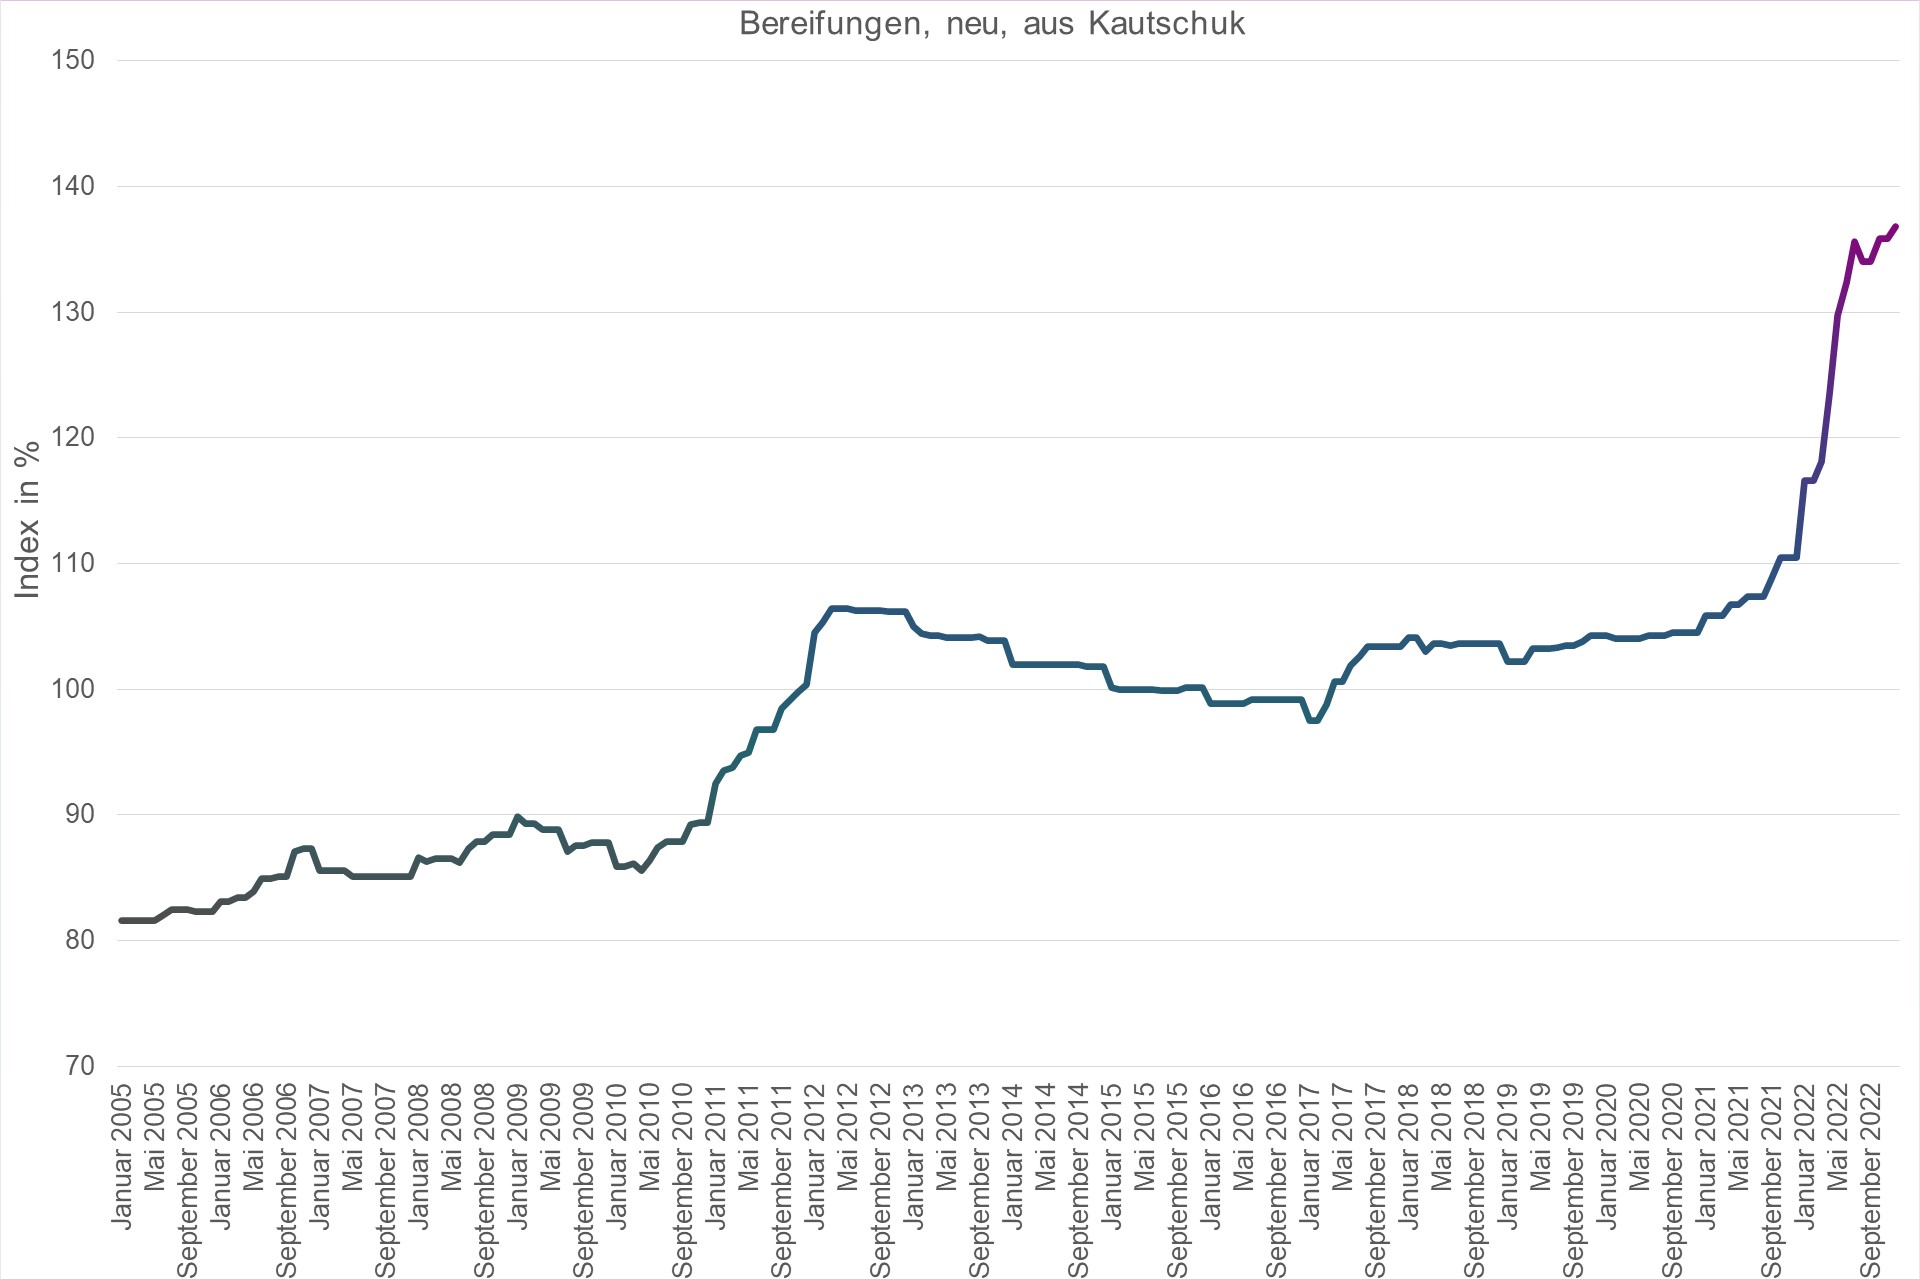 Grafik Preisindex Bereifungen, neu, aus Kautschuk